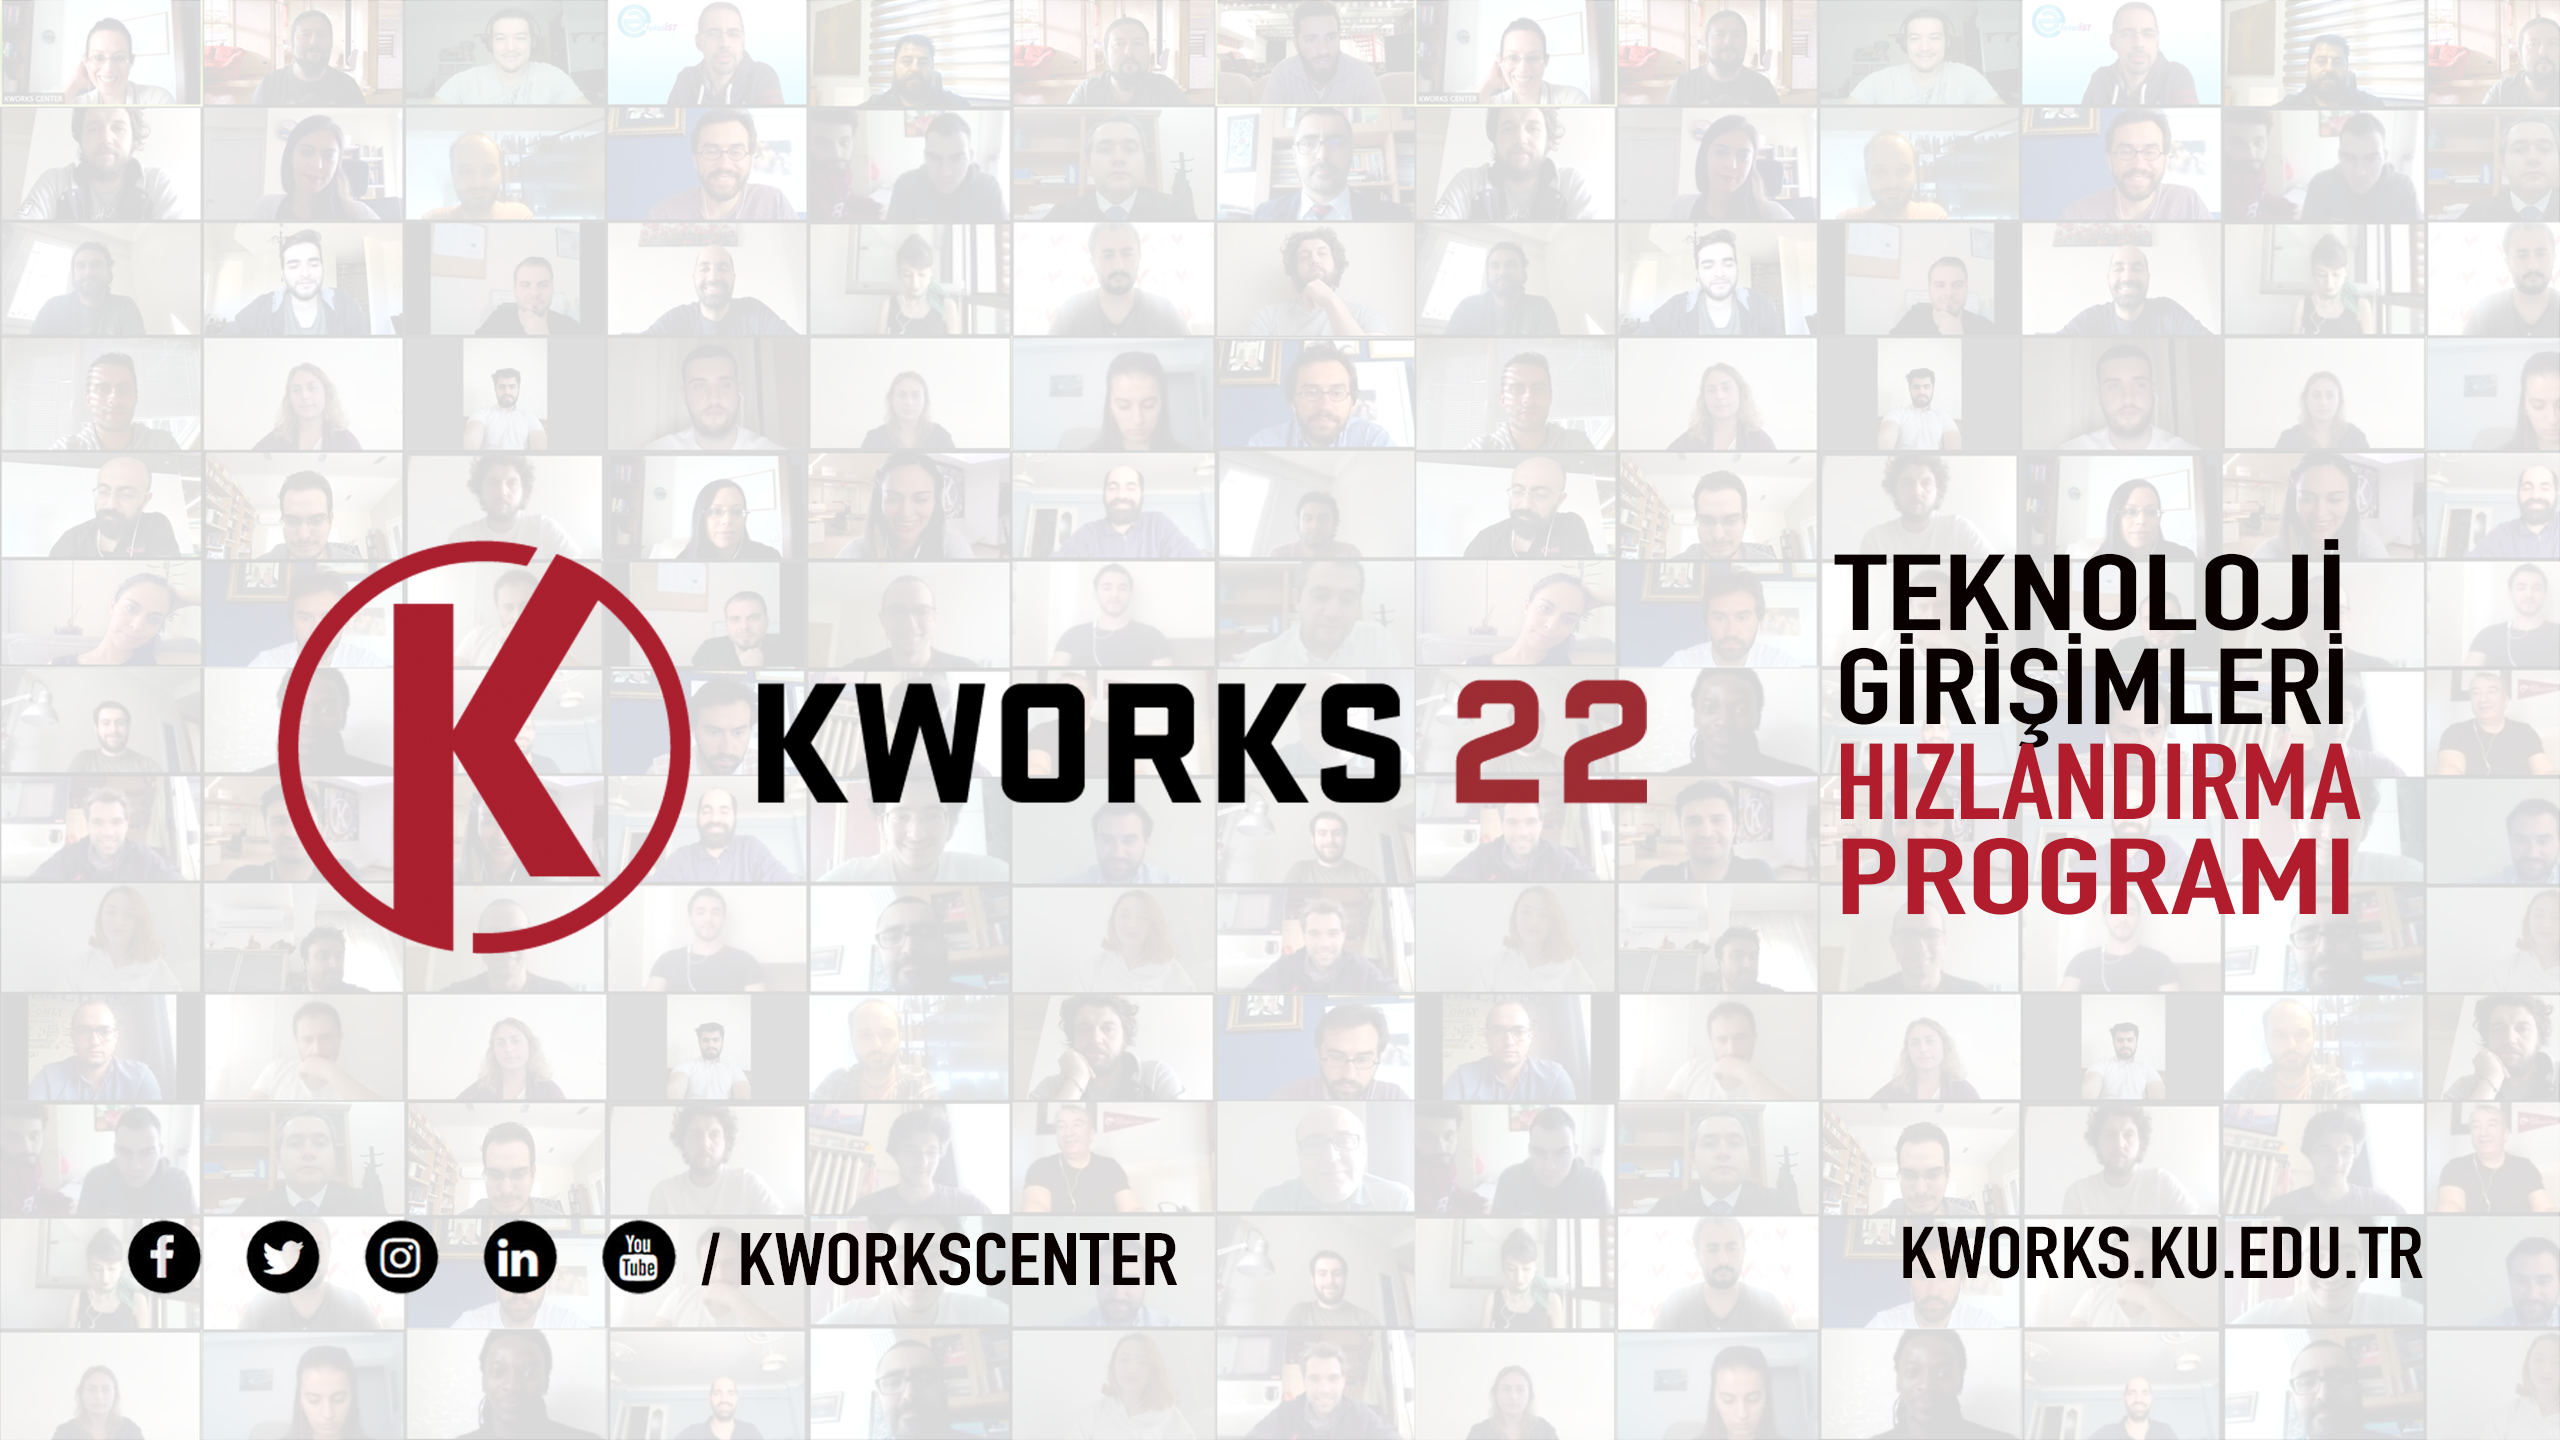 KWORKS'22 Teknoloji Girişimleri Hızlandırma Programı KWORKS22